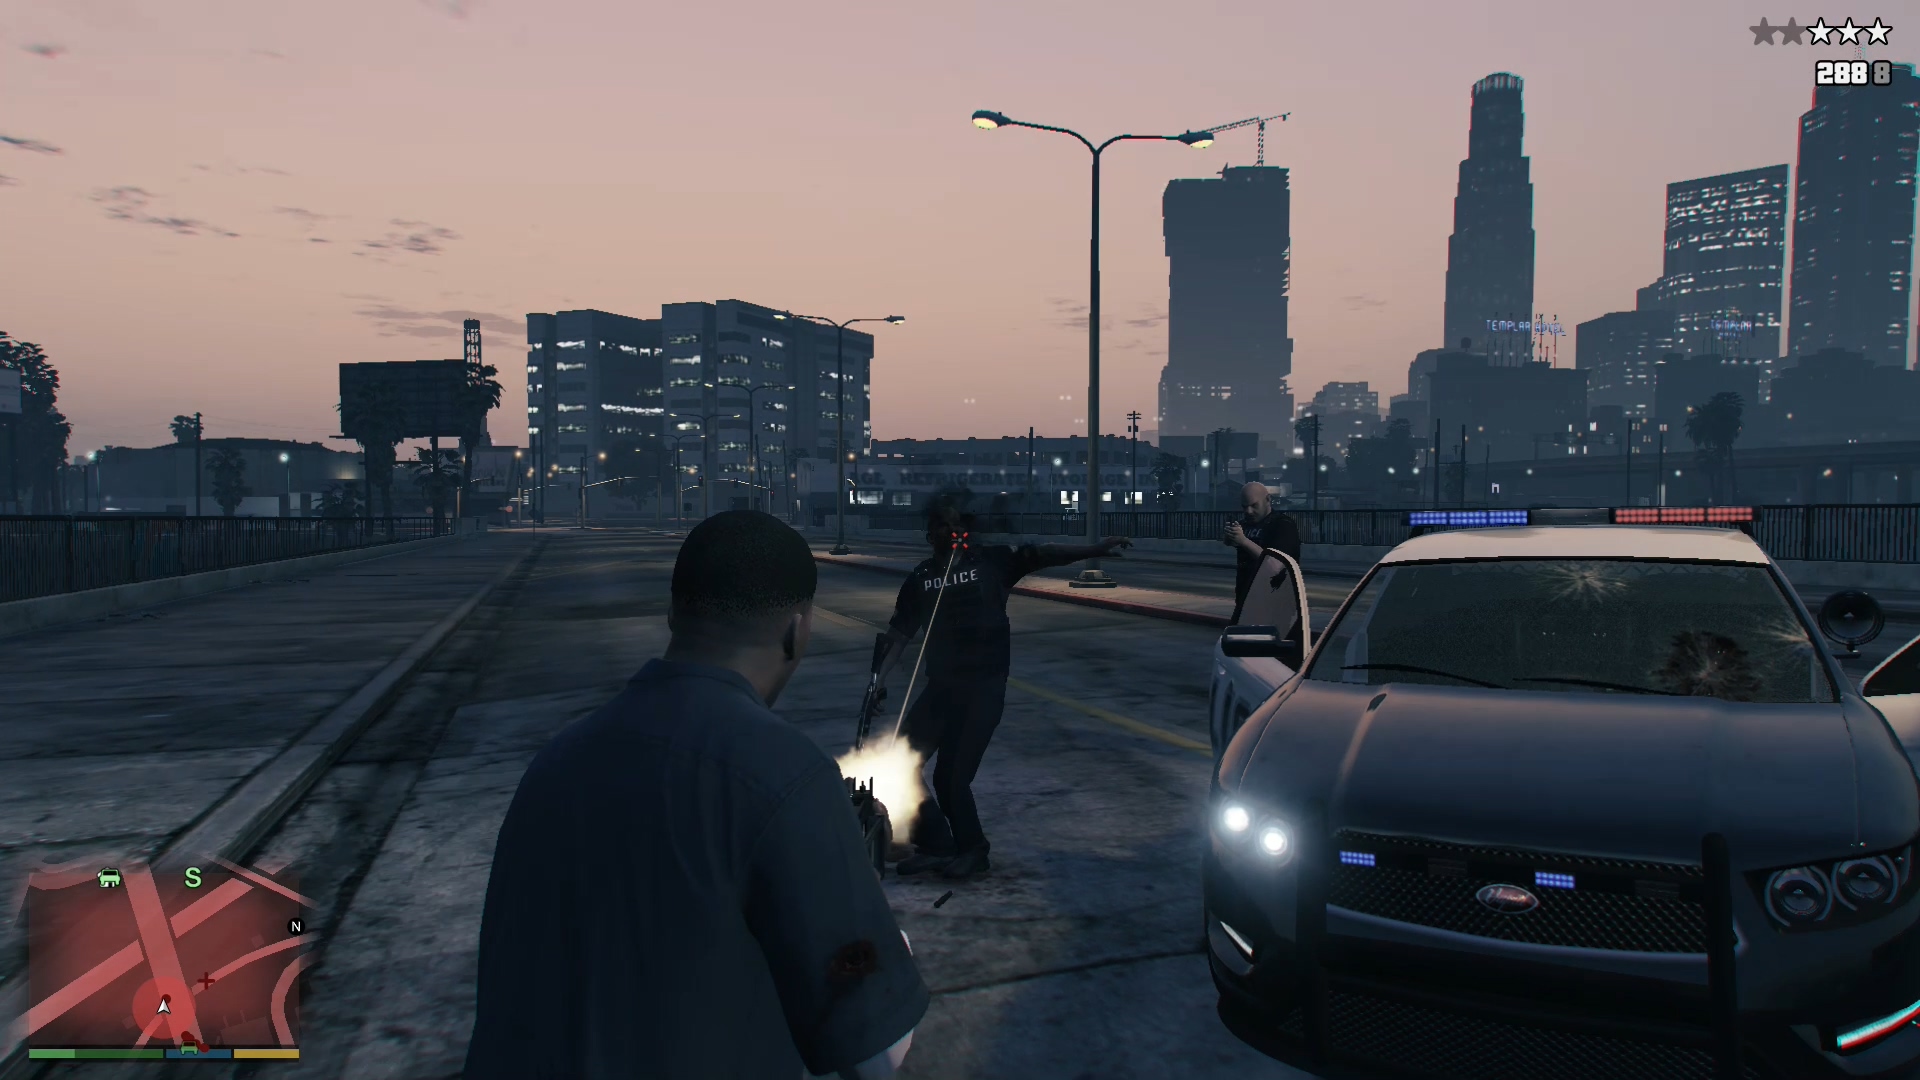 Игра гта 5 механики. GTA 5 Premium Edition. Изменение игры. Запуска игры "Grand Theft auto 5" (сирена, стрельба). Игра про изменение истории.